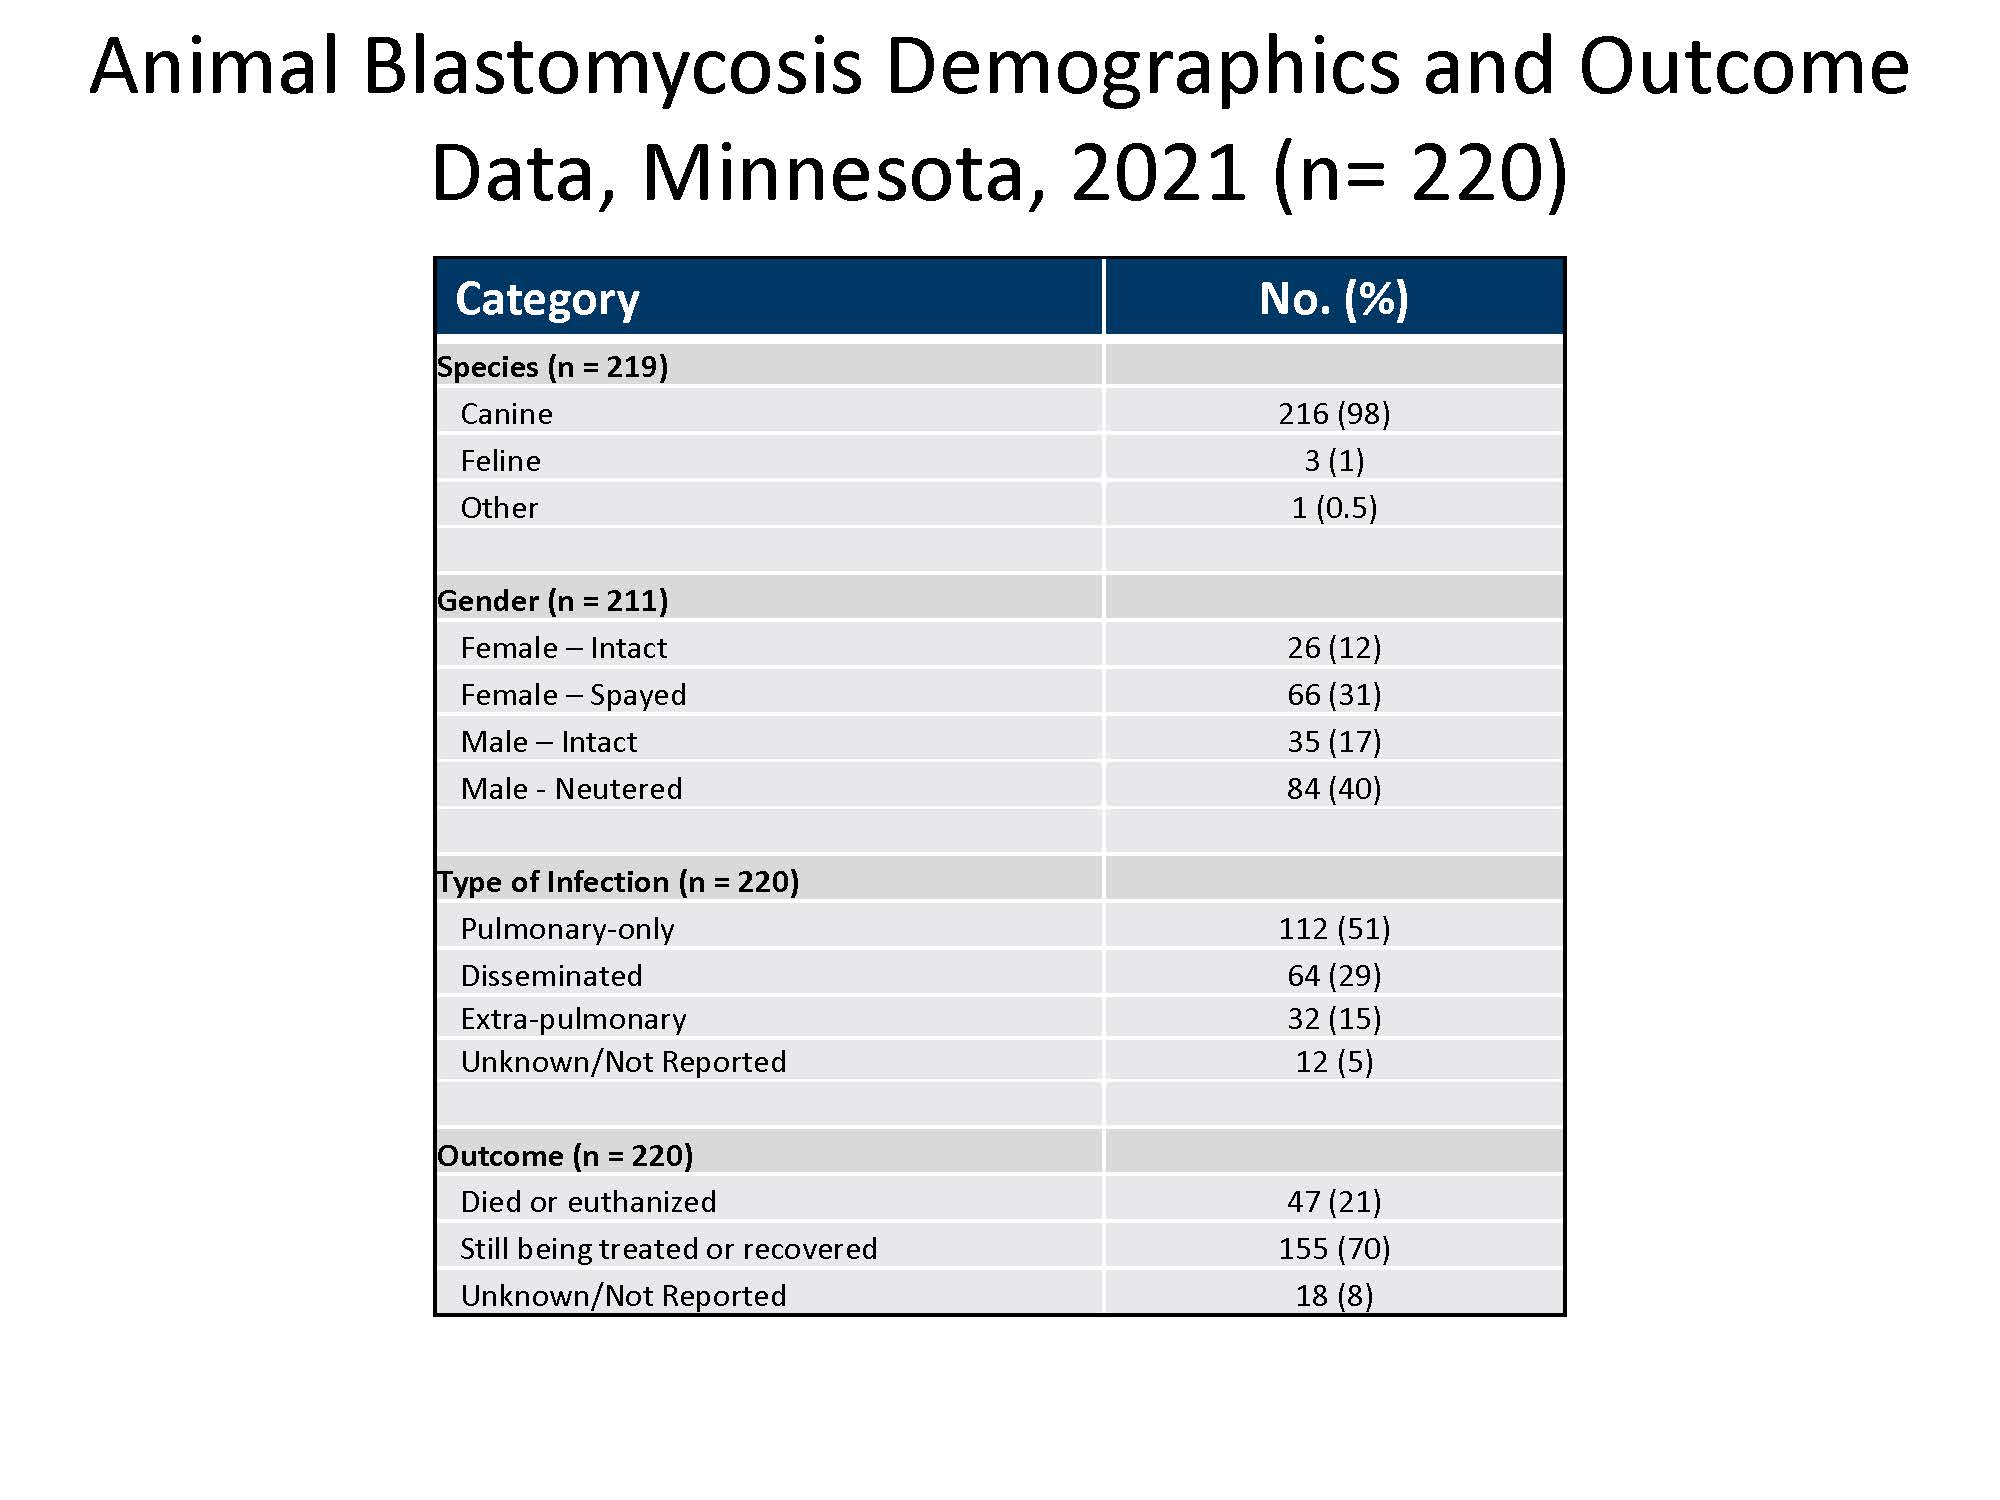 Animal Blastomycosis Demographics and Data, Minnesota, 2021